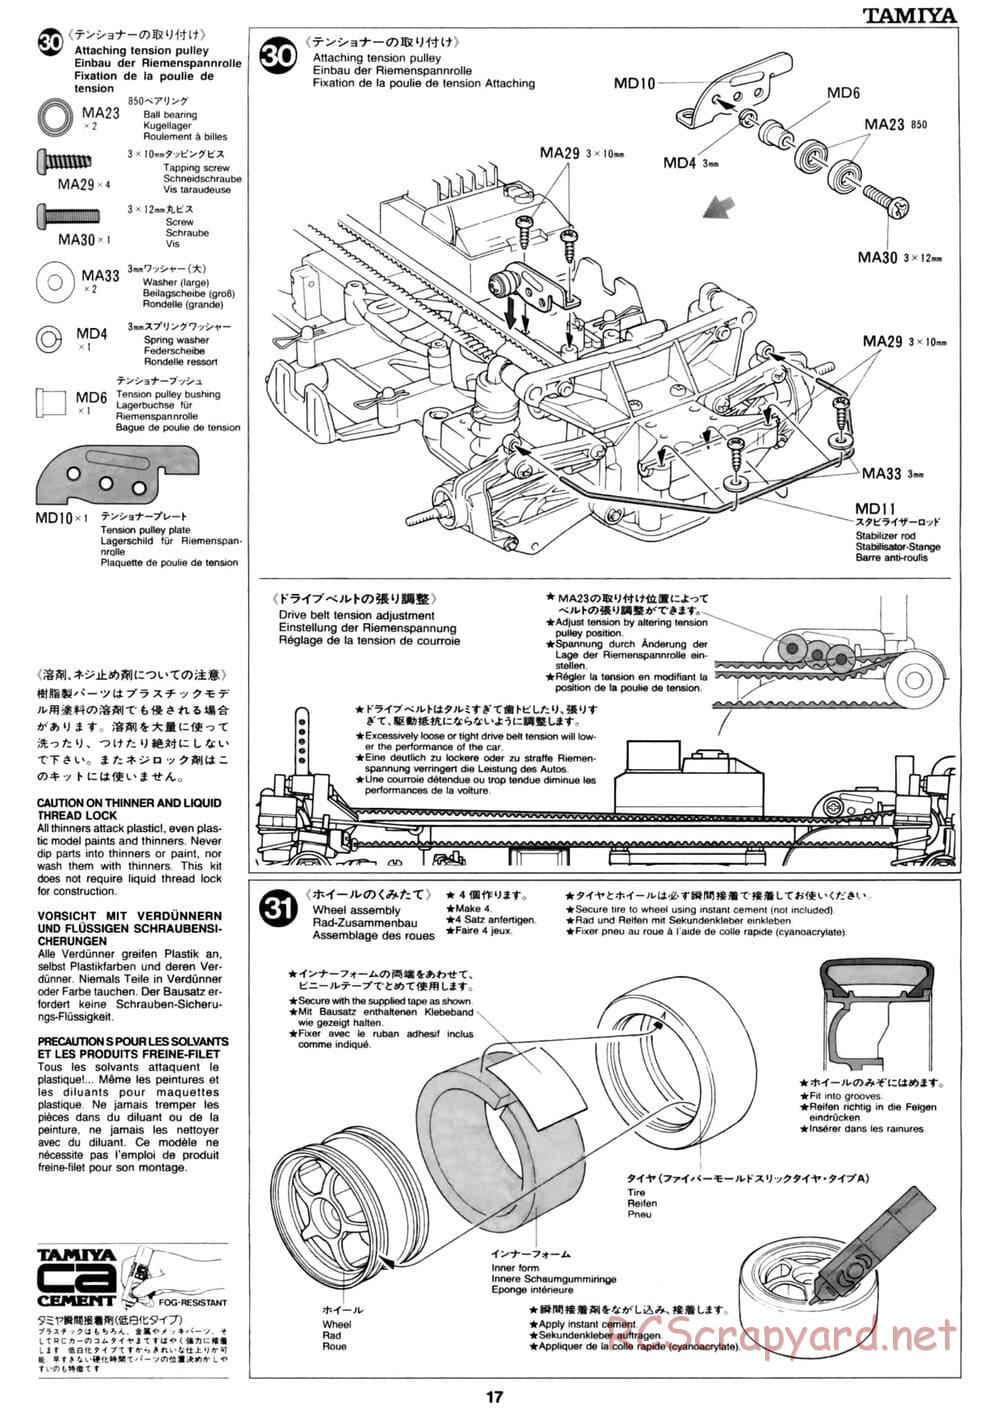 Tamiya - David Jun TA03F Pro Chassis - Manual - Page 17